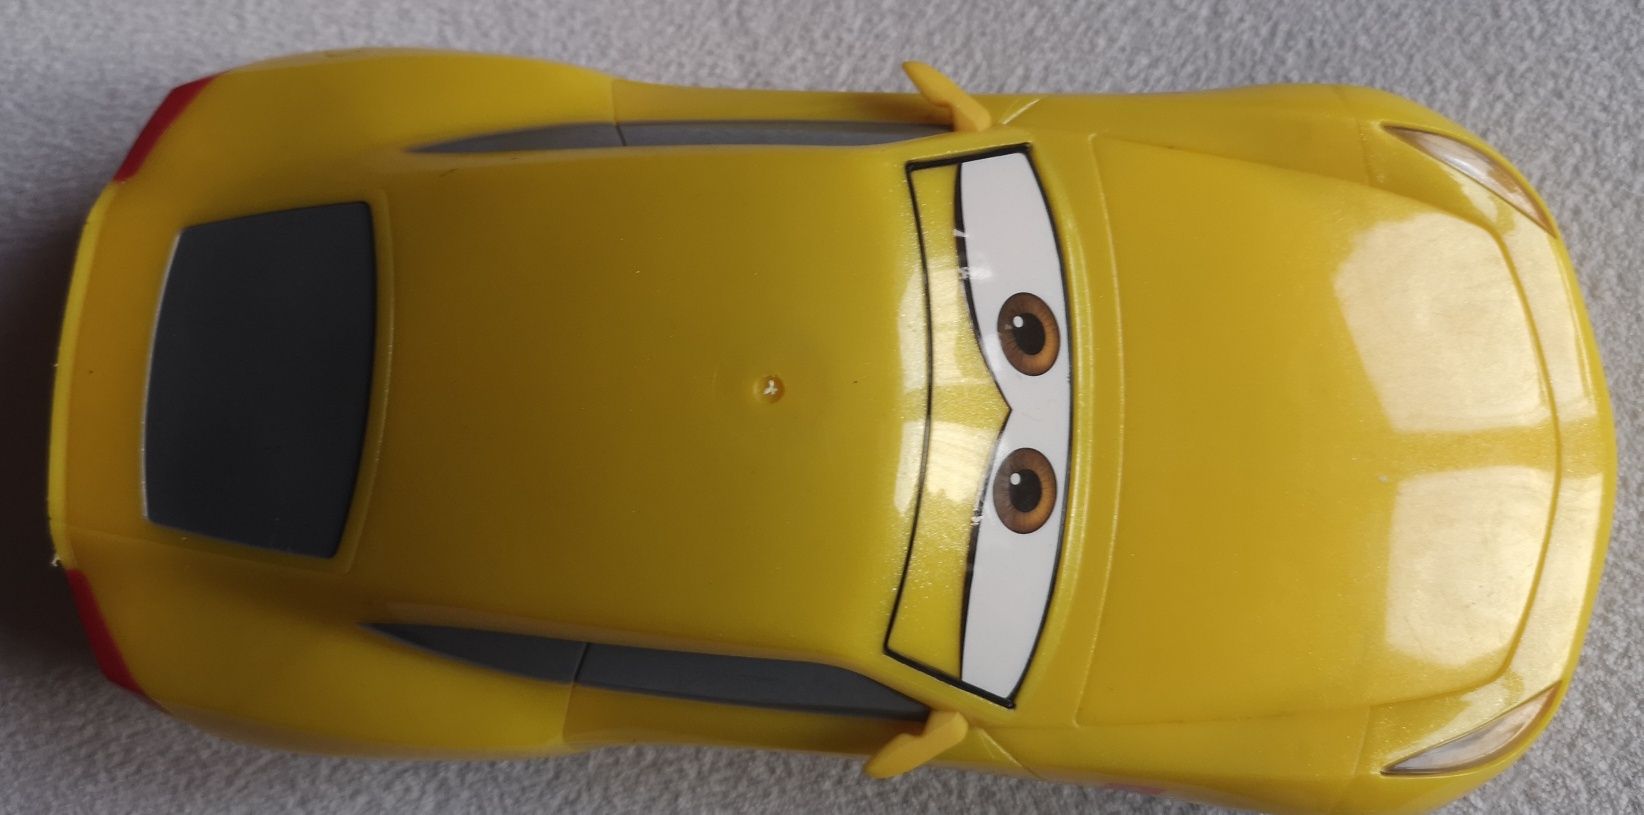 Disney Pixar Cars - Cruz Ramirez samochód interaktywny